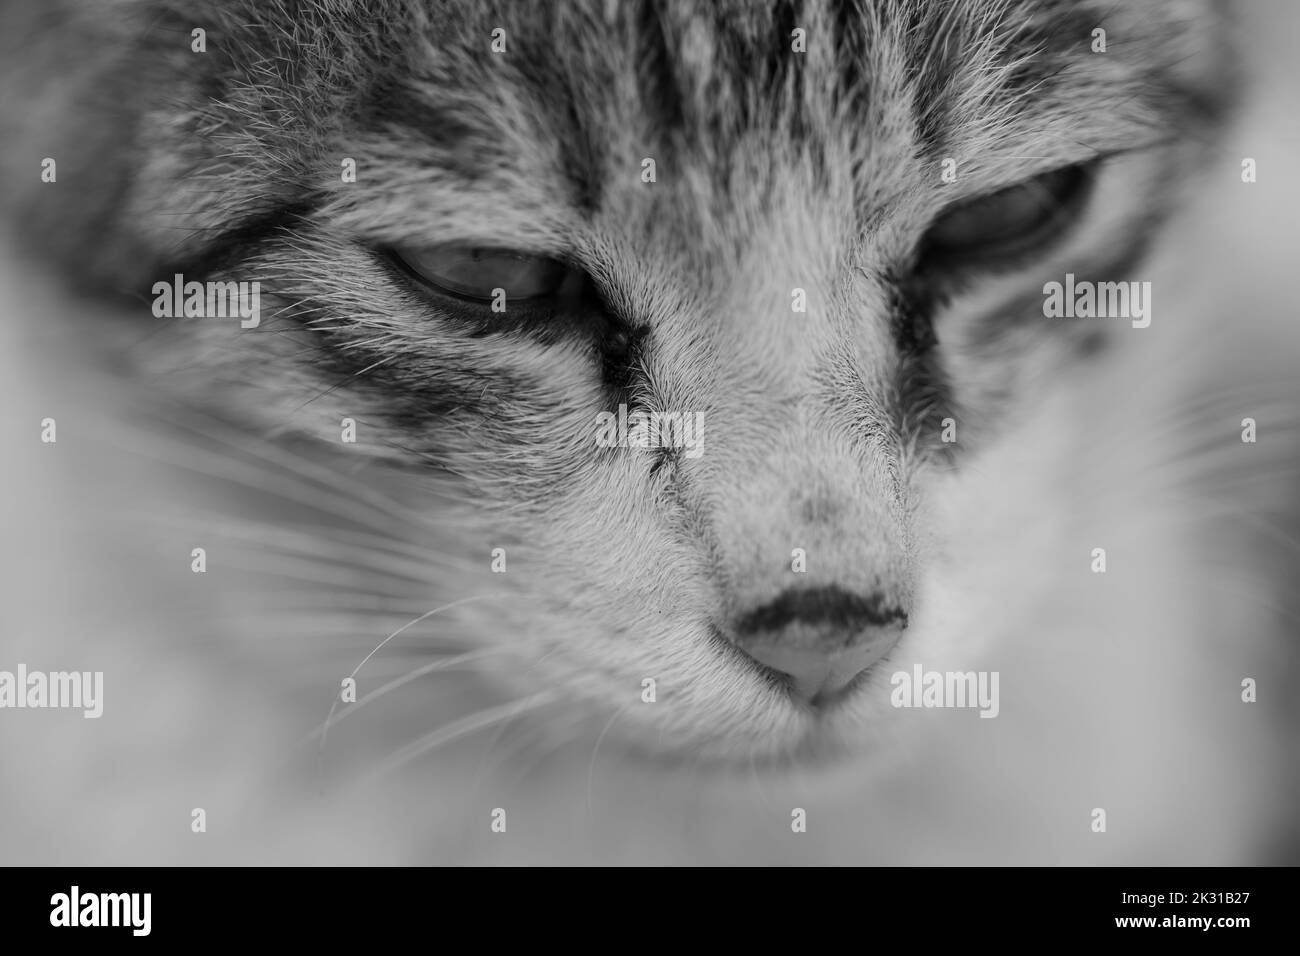 Un ritratto estremo di un gatto con i suoi occhi, naso e sussurri in bianco e nero Foto Stock